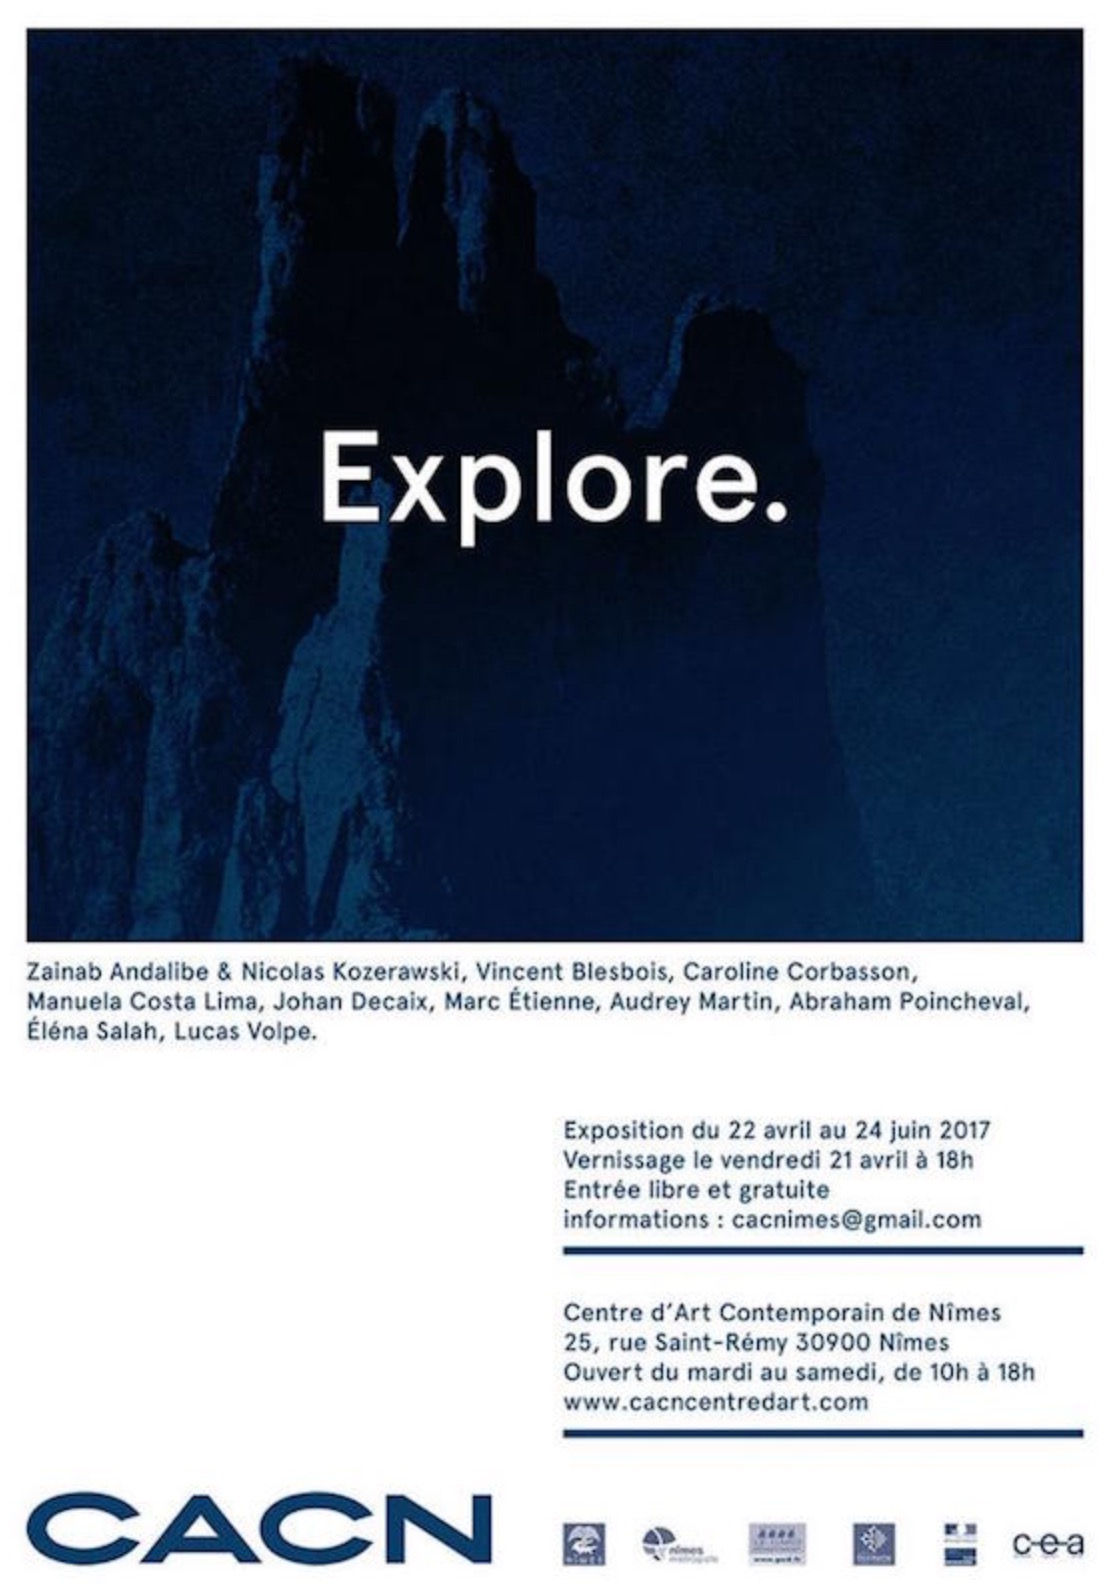 [EXPO] 21.04→24.06 – EXPLORE – EXPOSITION INAUGURALE DU CENTRE D’ART CONTEMPORAIN DE NÎMES